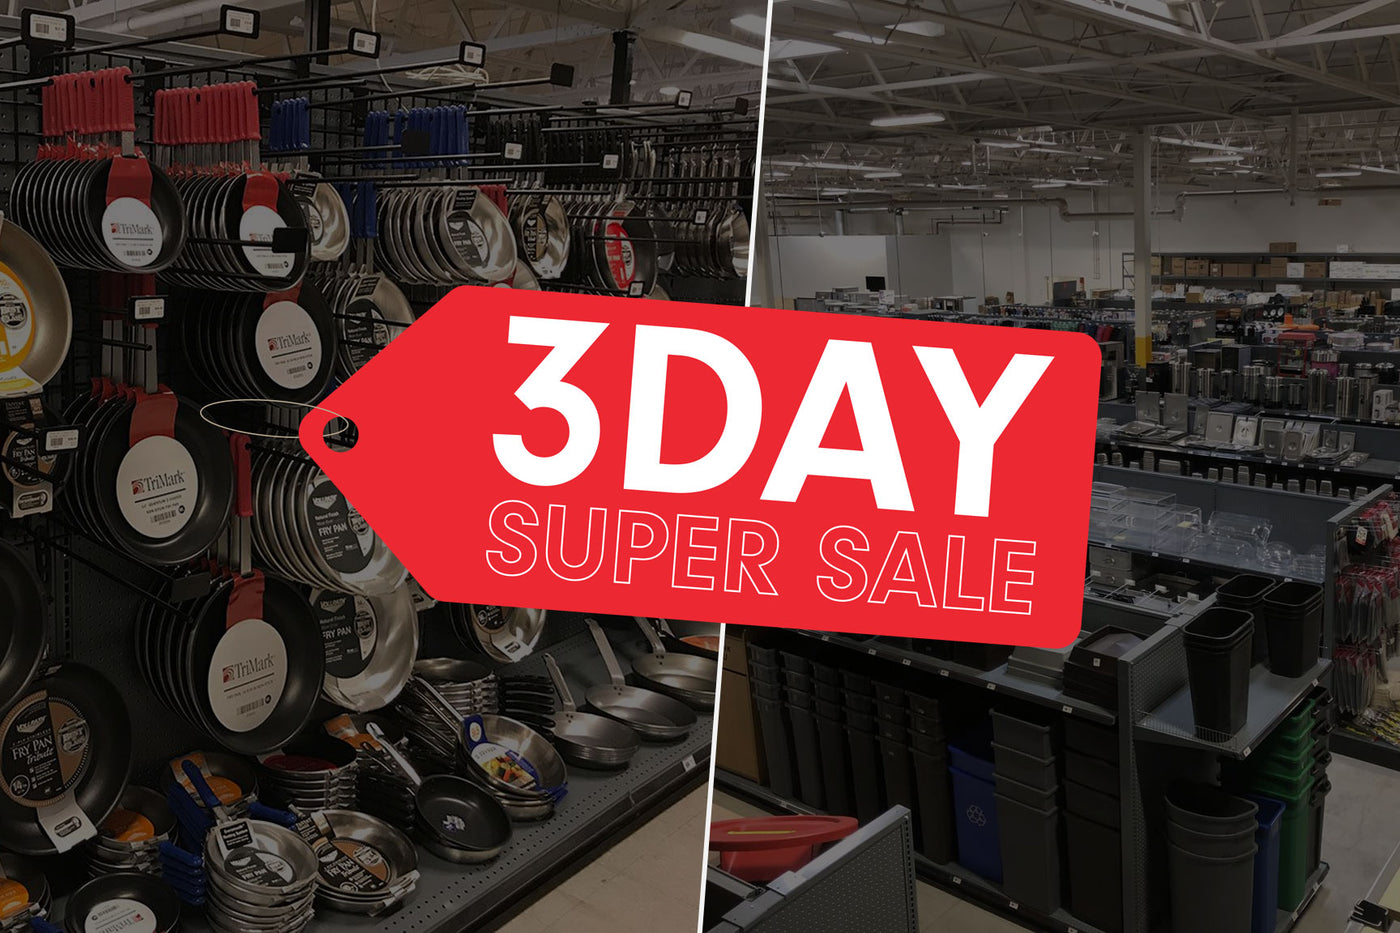 3 day super sale